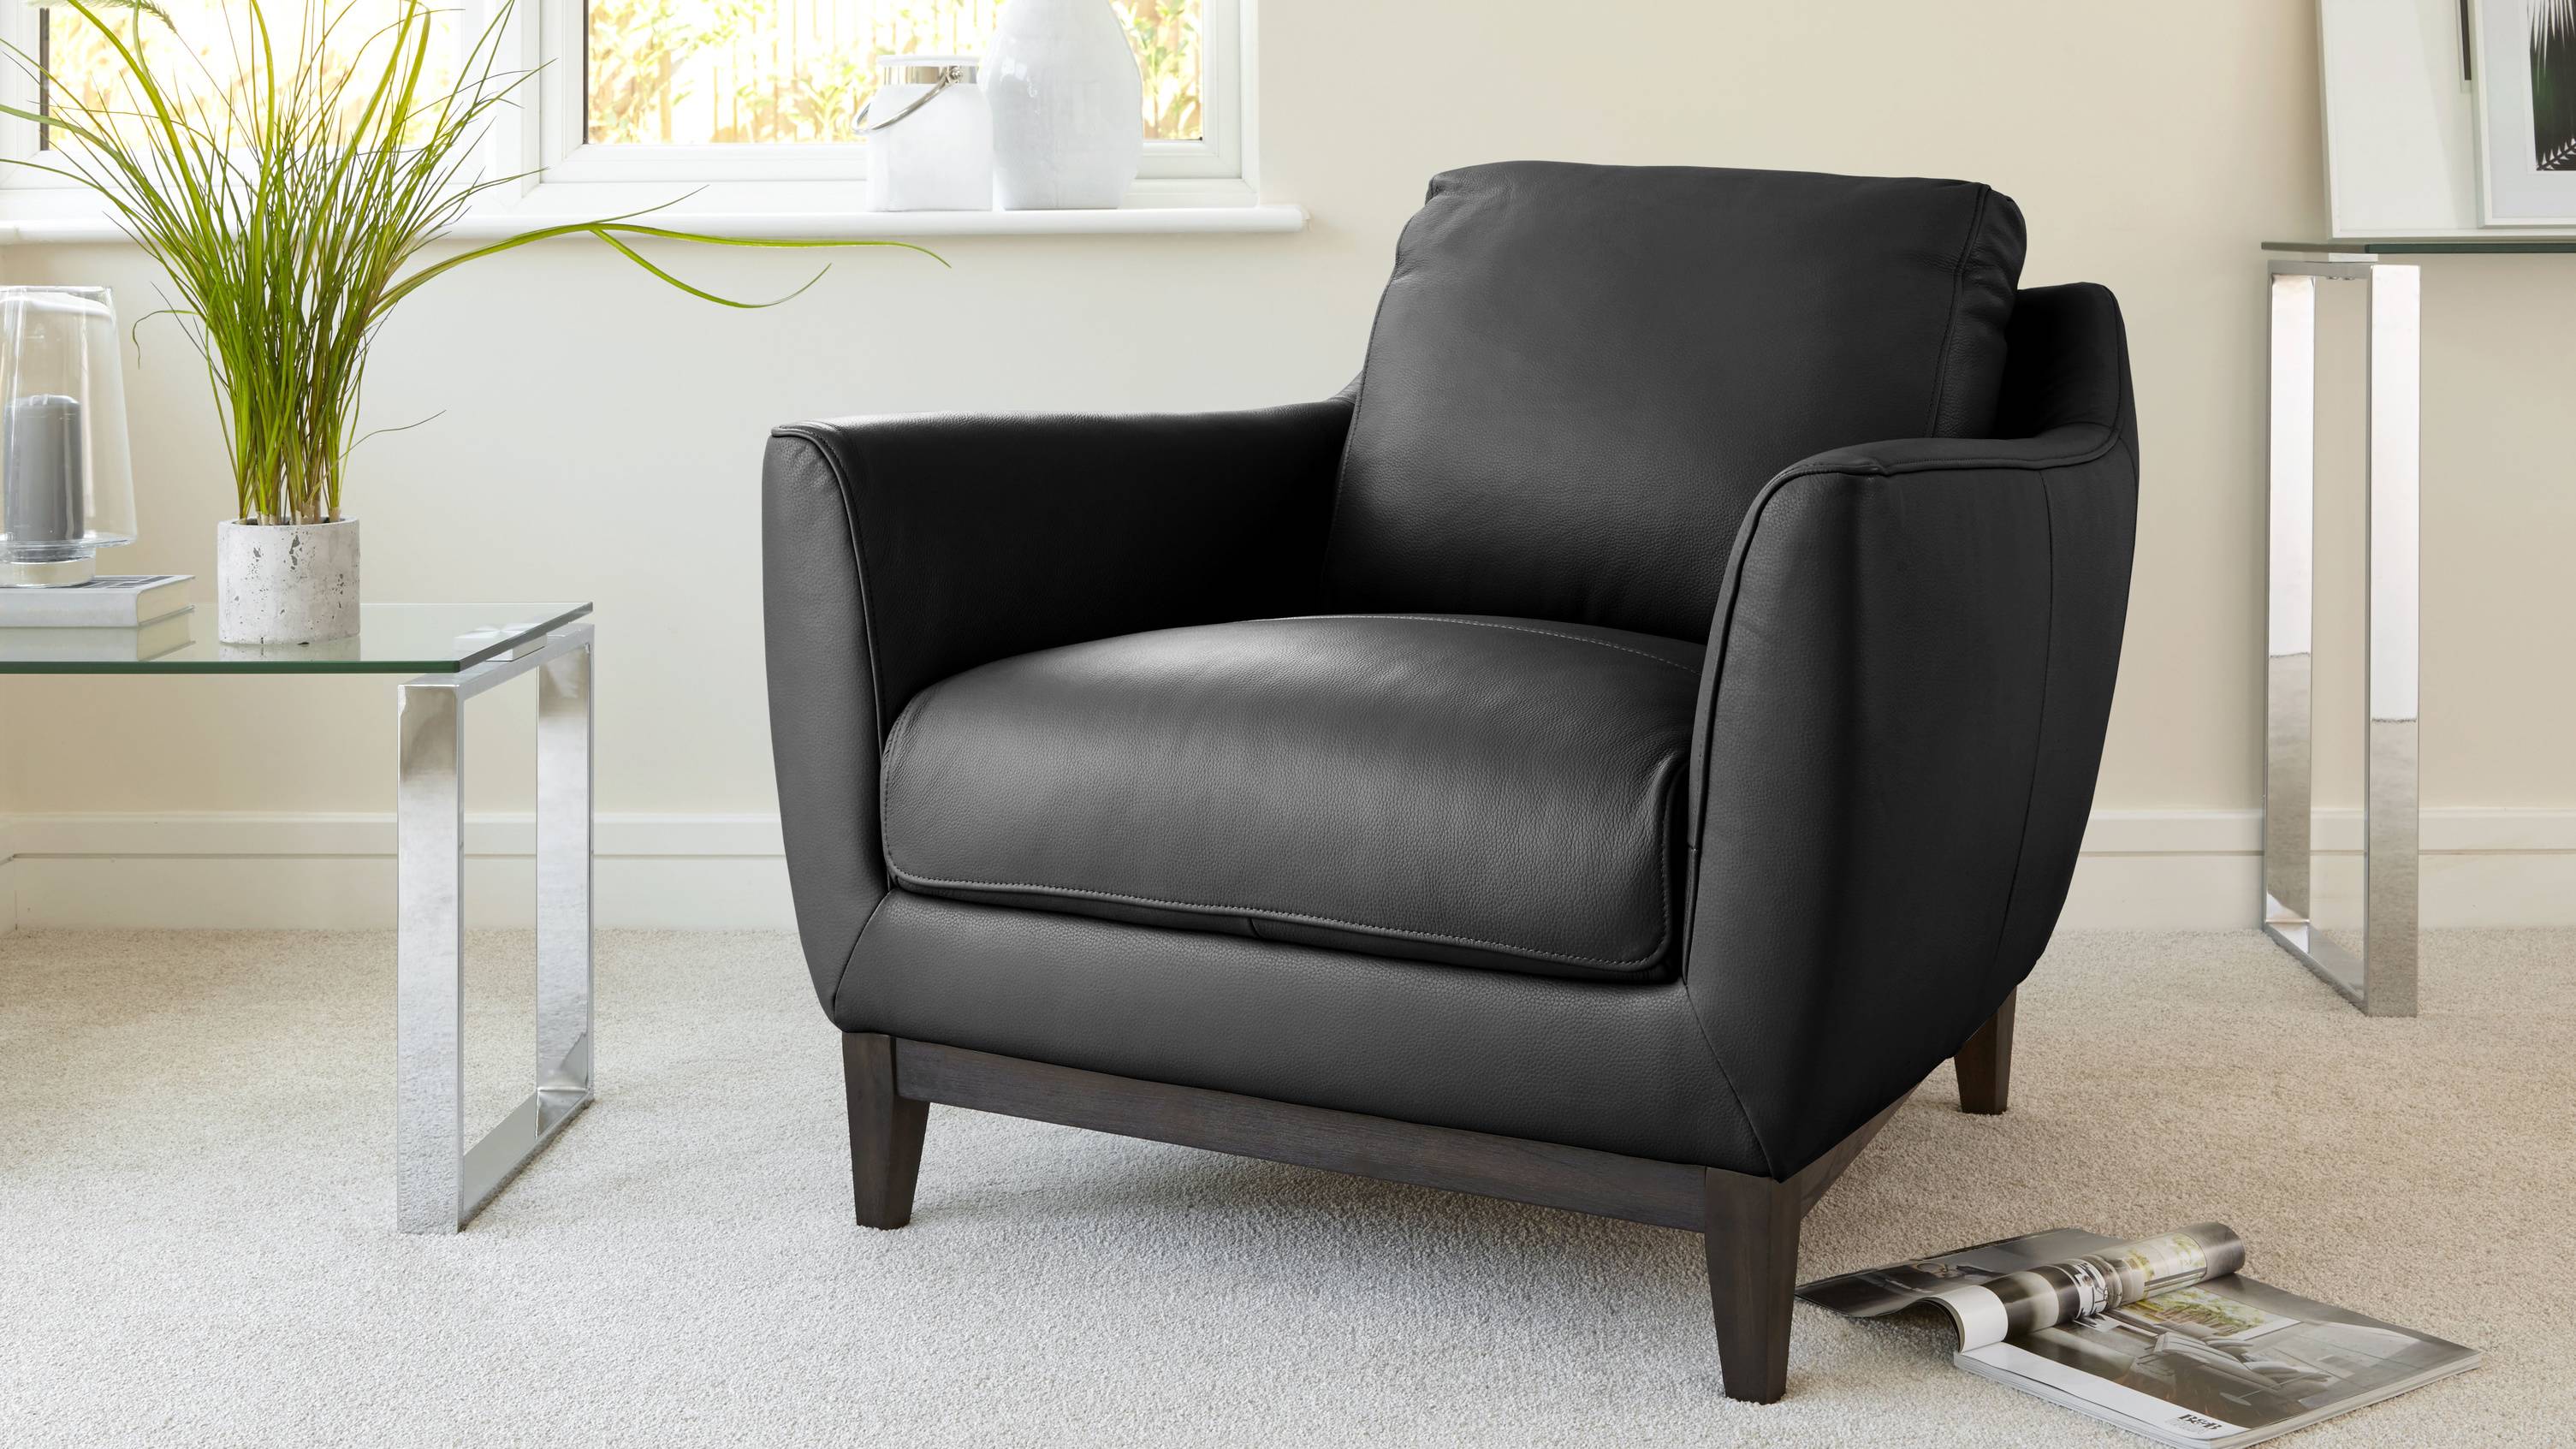 Black Premium Leather Armchair Sofa